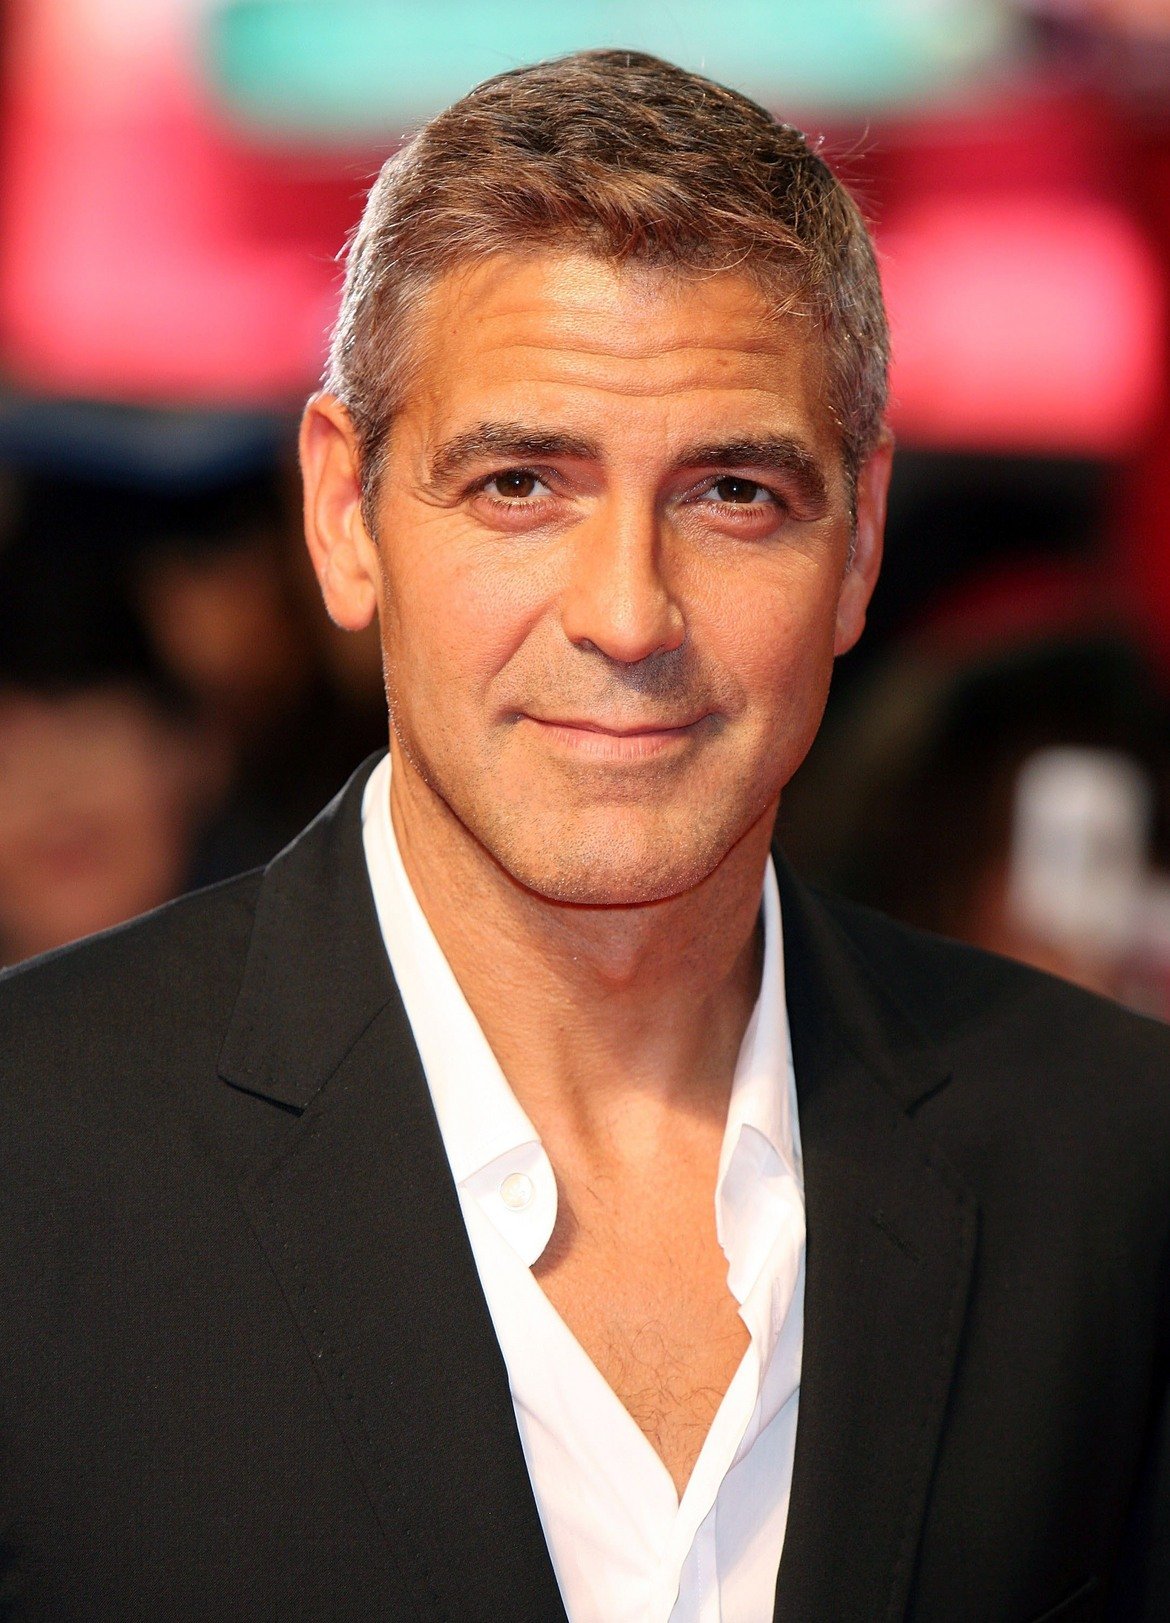  Джордж Клуни 

Трудно е да се повярва, че Клуни е имал затруднения въобще да получи роля в Холивуд. Само че по времето, в което той се опитва да пробие, е особено важно вече да имаш няколко успешни проекта в CV-то си. Затова актьорът лъже, че е участвал във филма Cat People от 1982-а. За съжаление на Клуни се оказва, че ръководителката на кастингите е подбирала актьорите и за Cat People и хваща измамата. Въпреки това Джордж й става симпатичен и му помага кариерата му да потръгне.